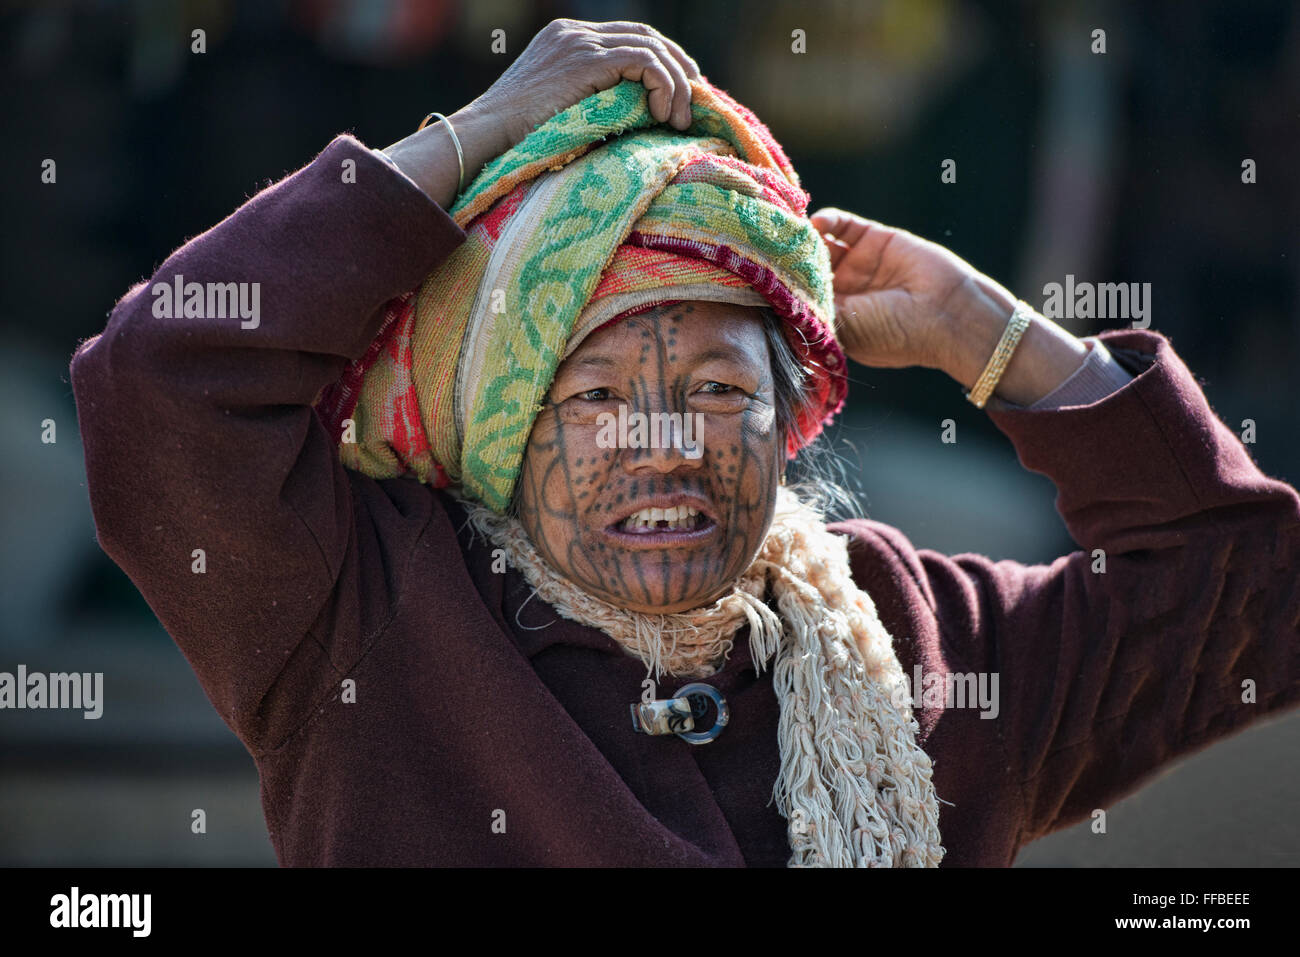 Porträt einer Frau Muun Chin mit Gesicht tätowiert, Mindat, Myanmar. Stockfoto